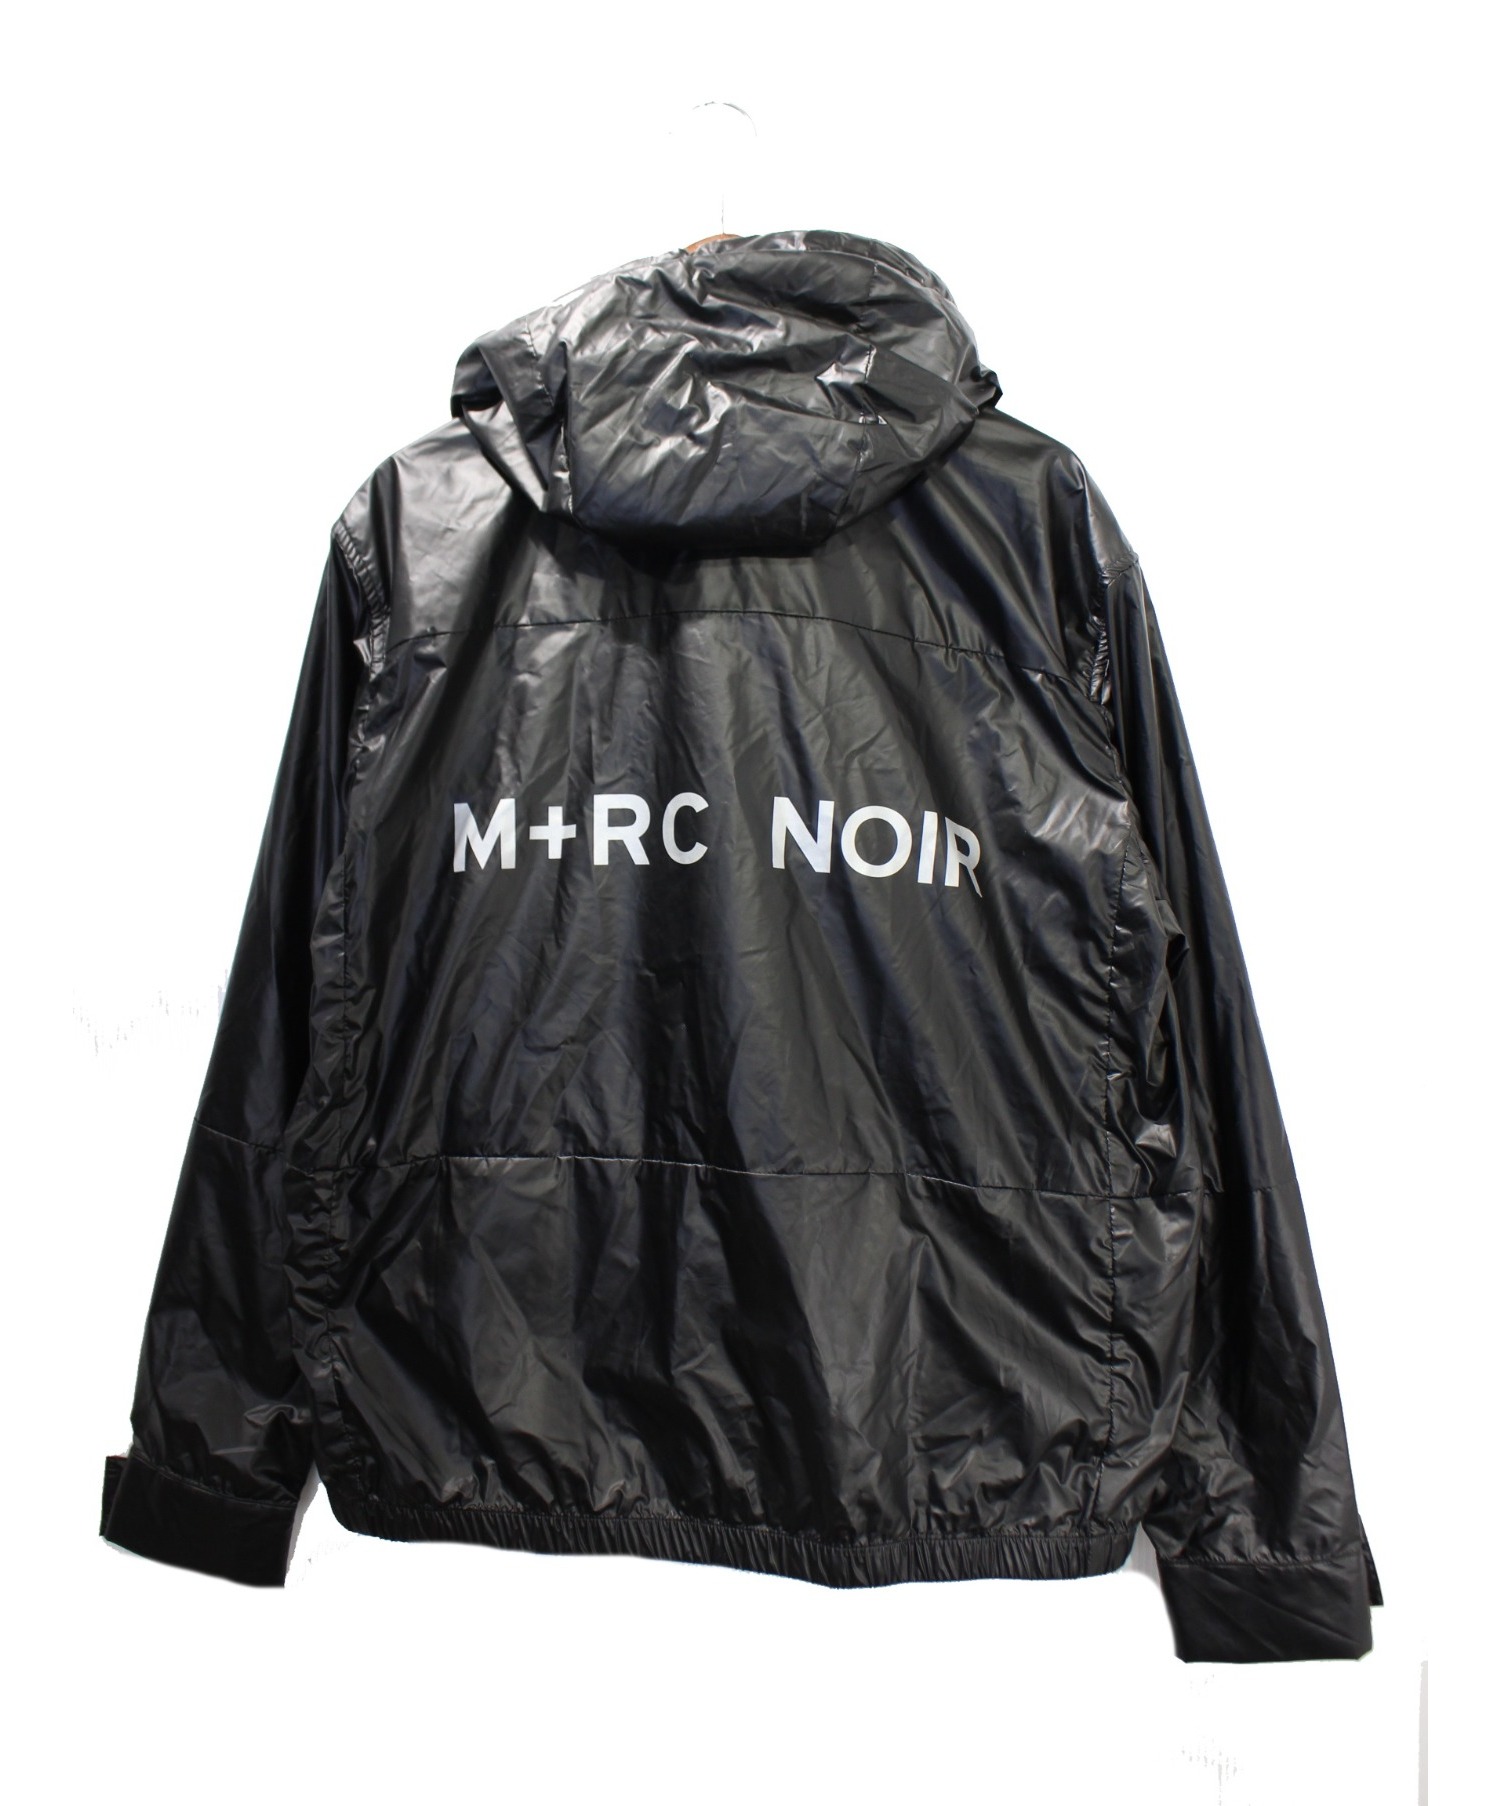 即出荷】 【M+RC NOIR】NOIR マルシェノア ブラック ジャケット CARBON 